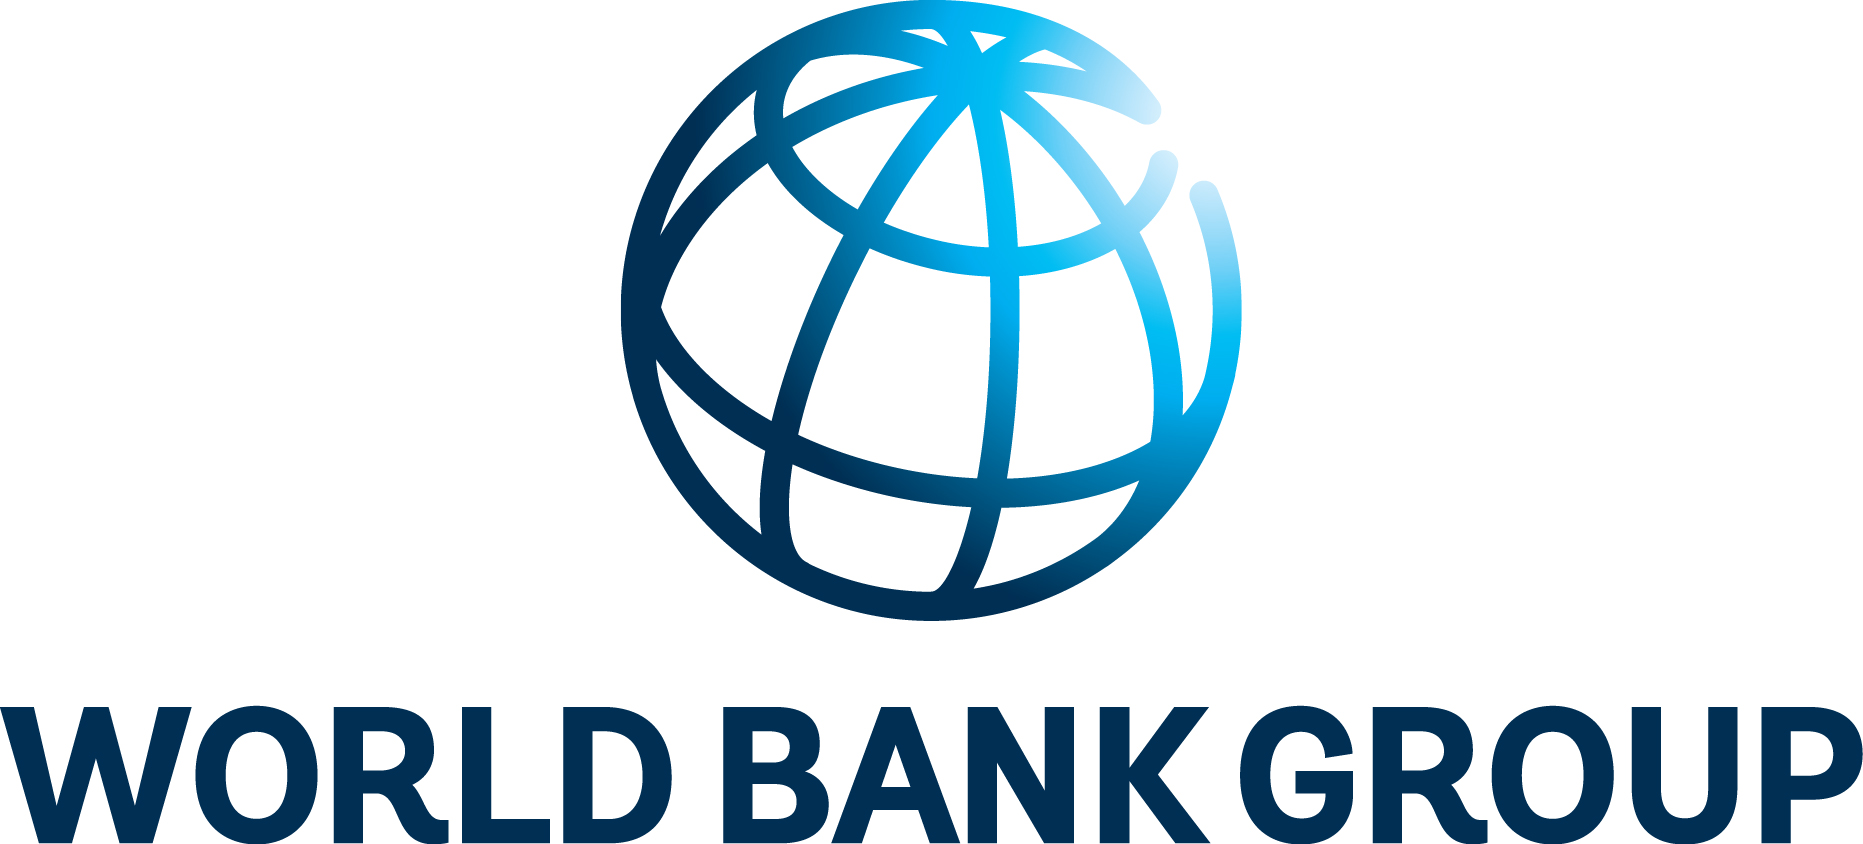 WorldBankGroup_logo